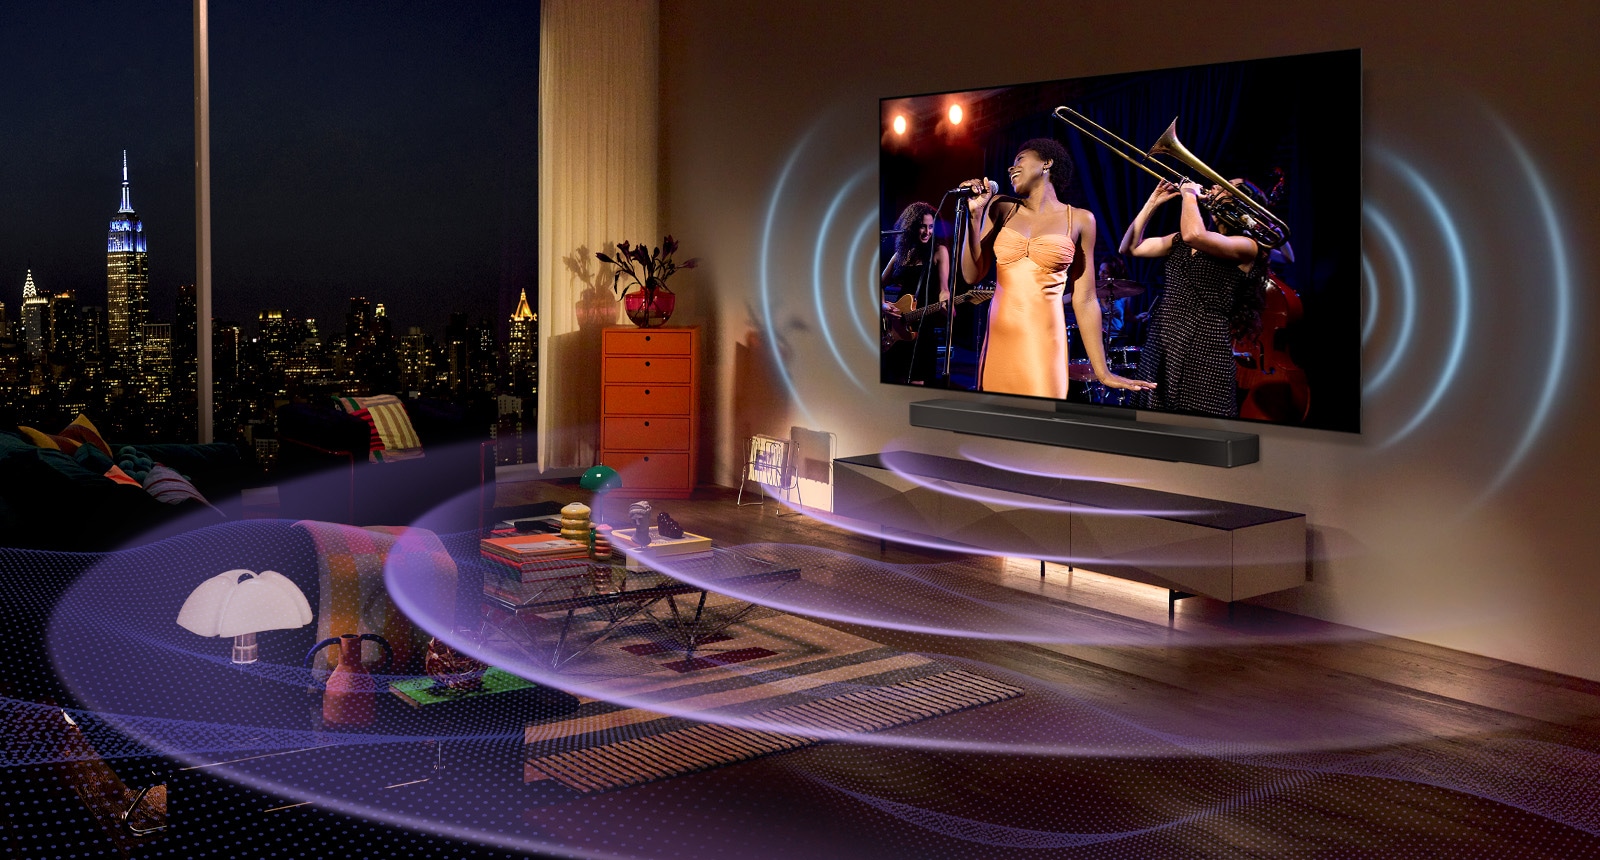 Een beeld van een LG OLED TV met Soundbar. Een video van een jongen die gitaar speelt speelt op het scherm met daaroverheen de instellingen van de soundbar.